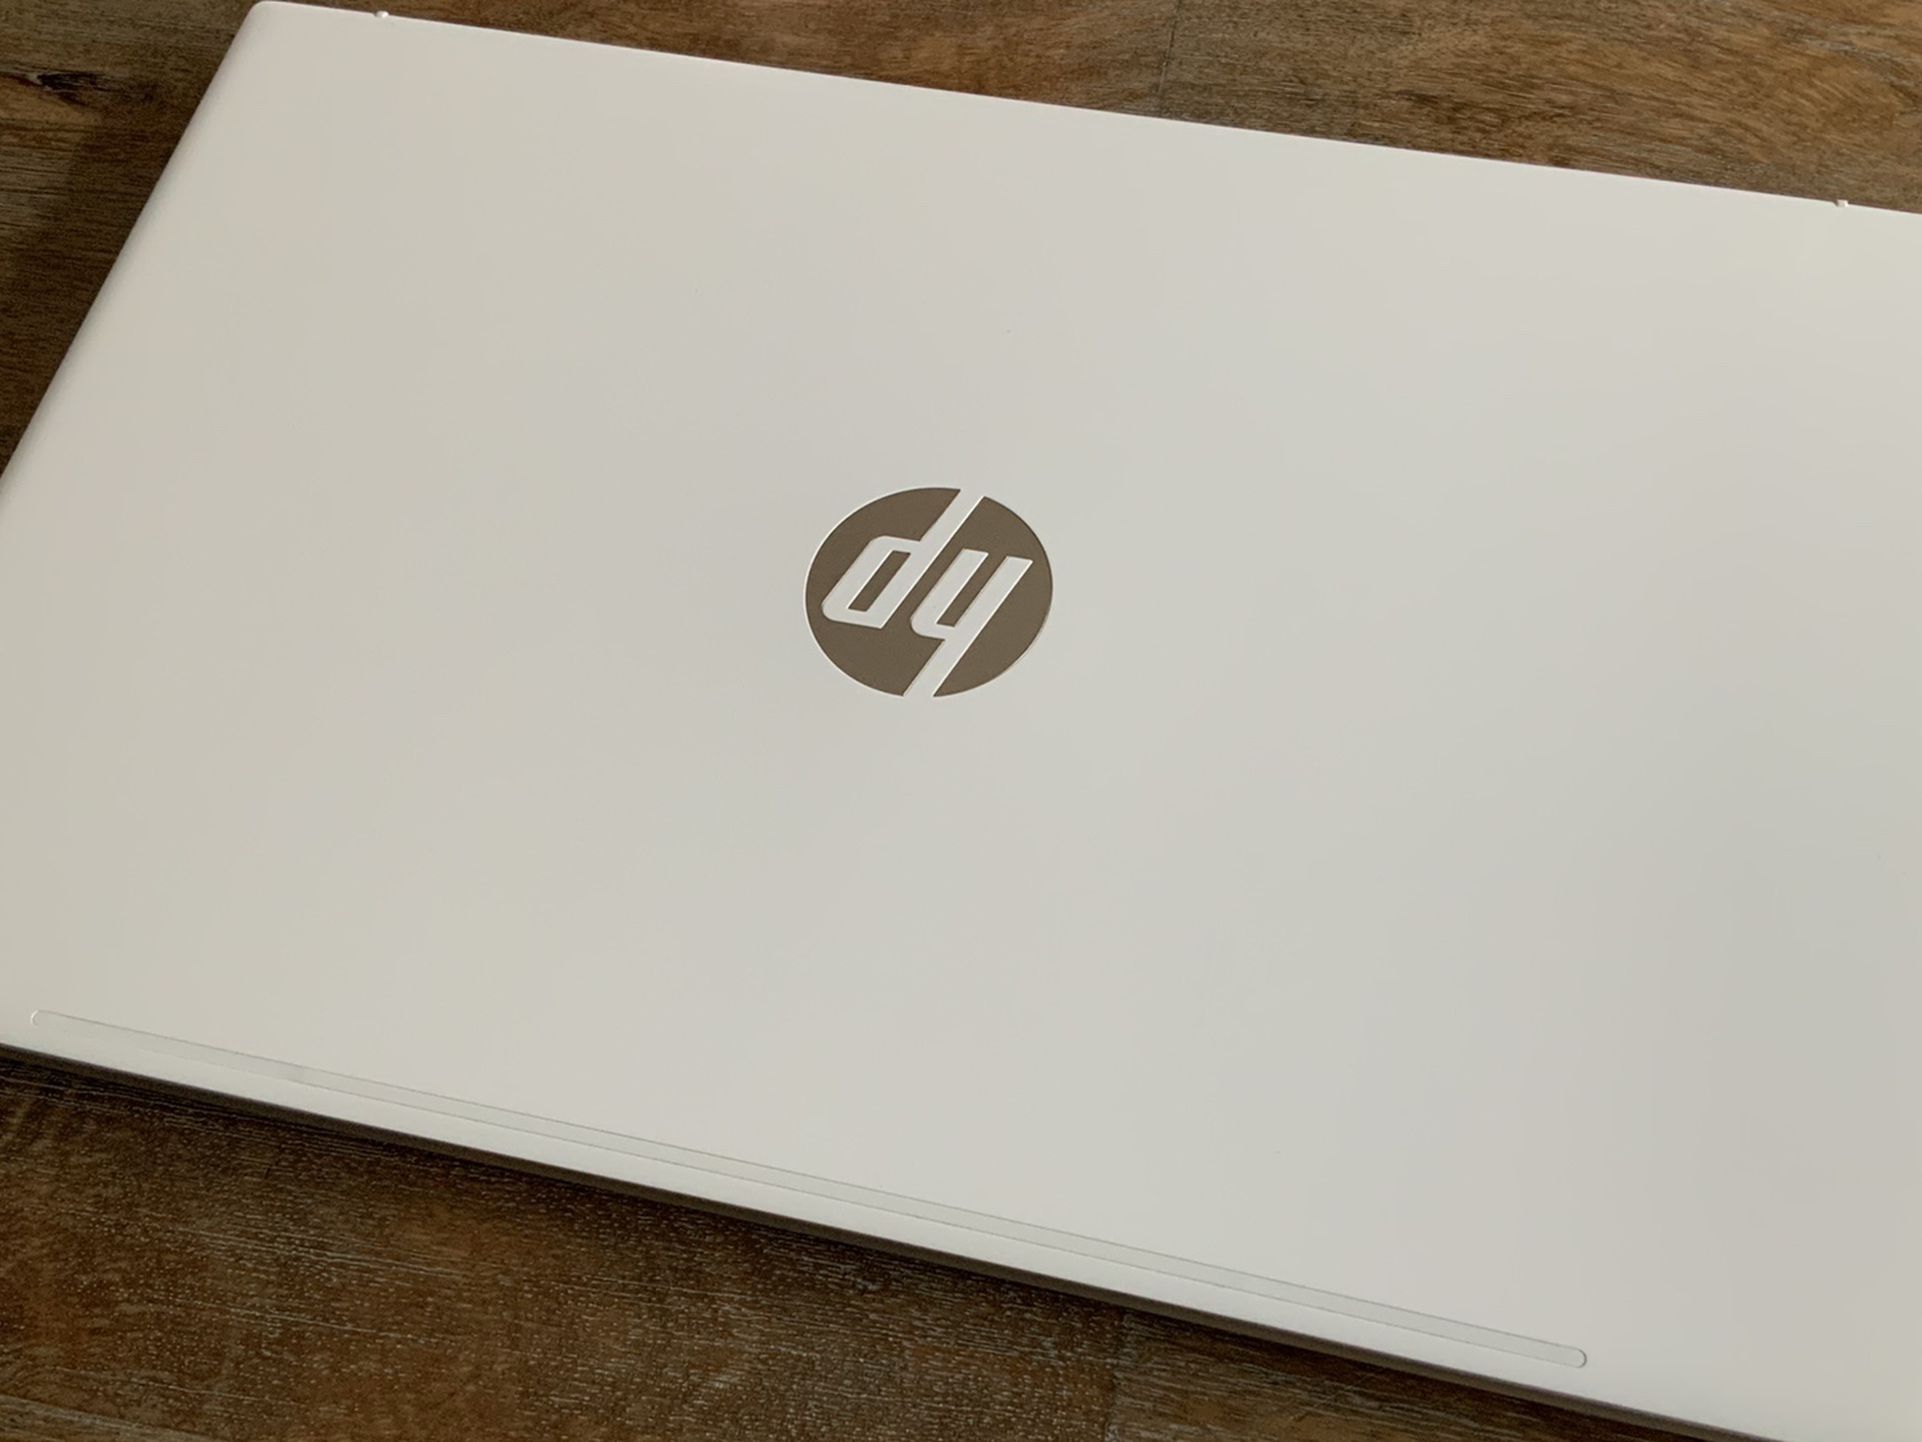 HP Pavilion 15” Ryzen 7 Touchscreen Laptop